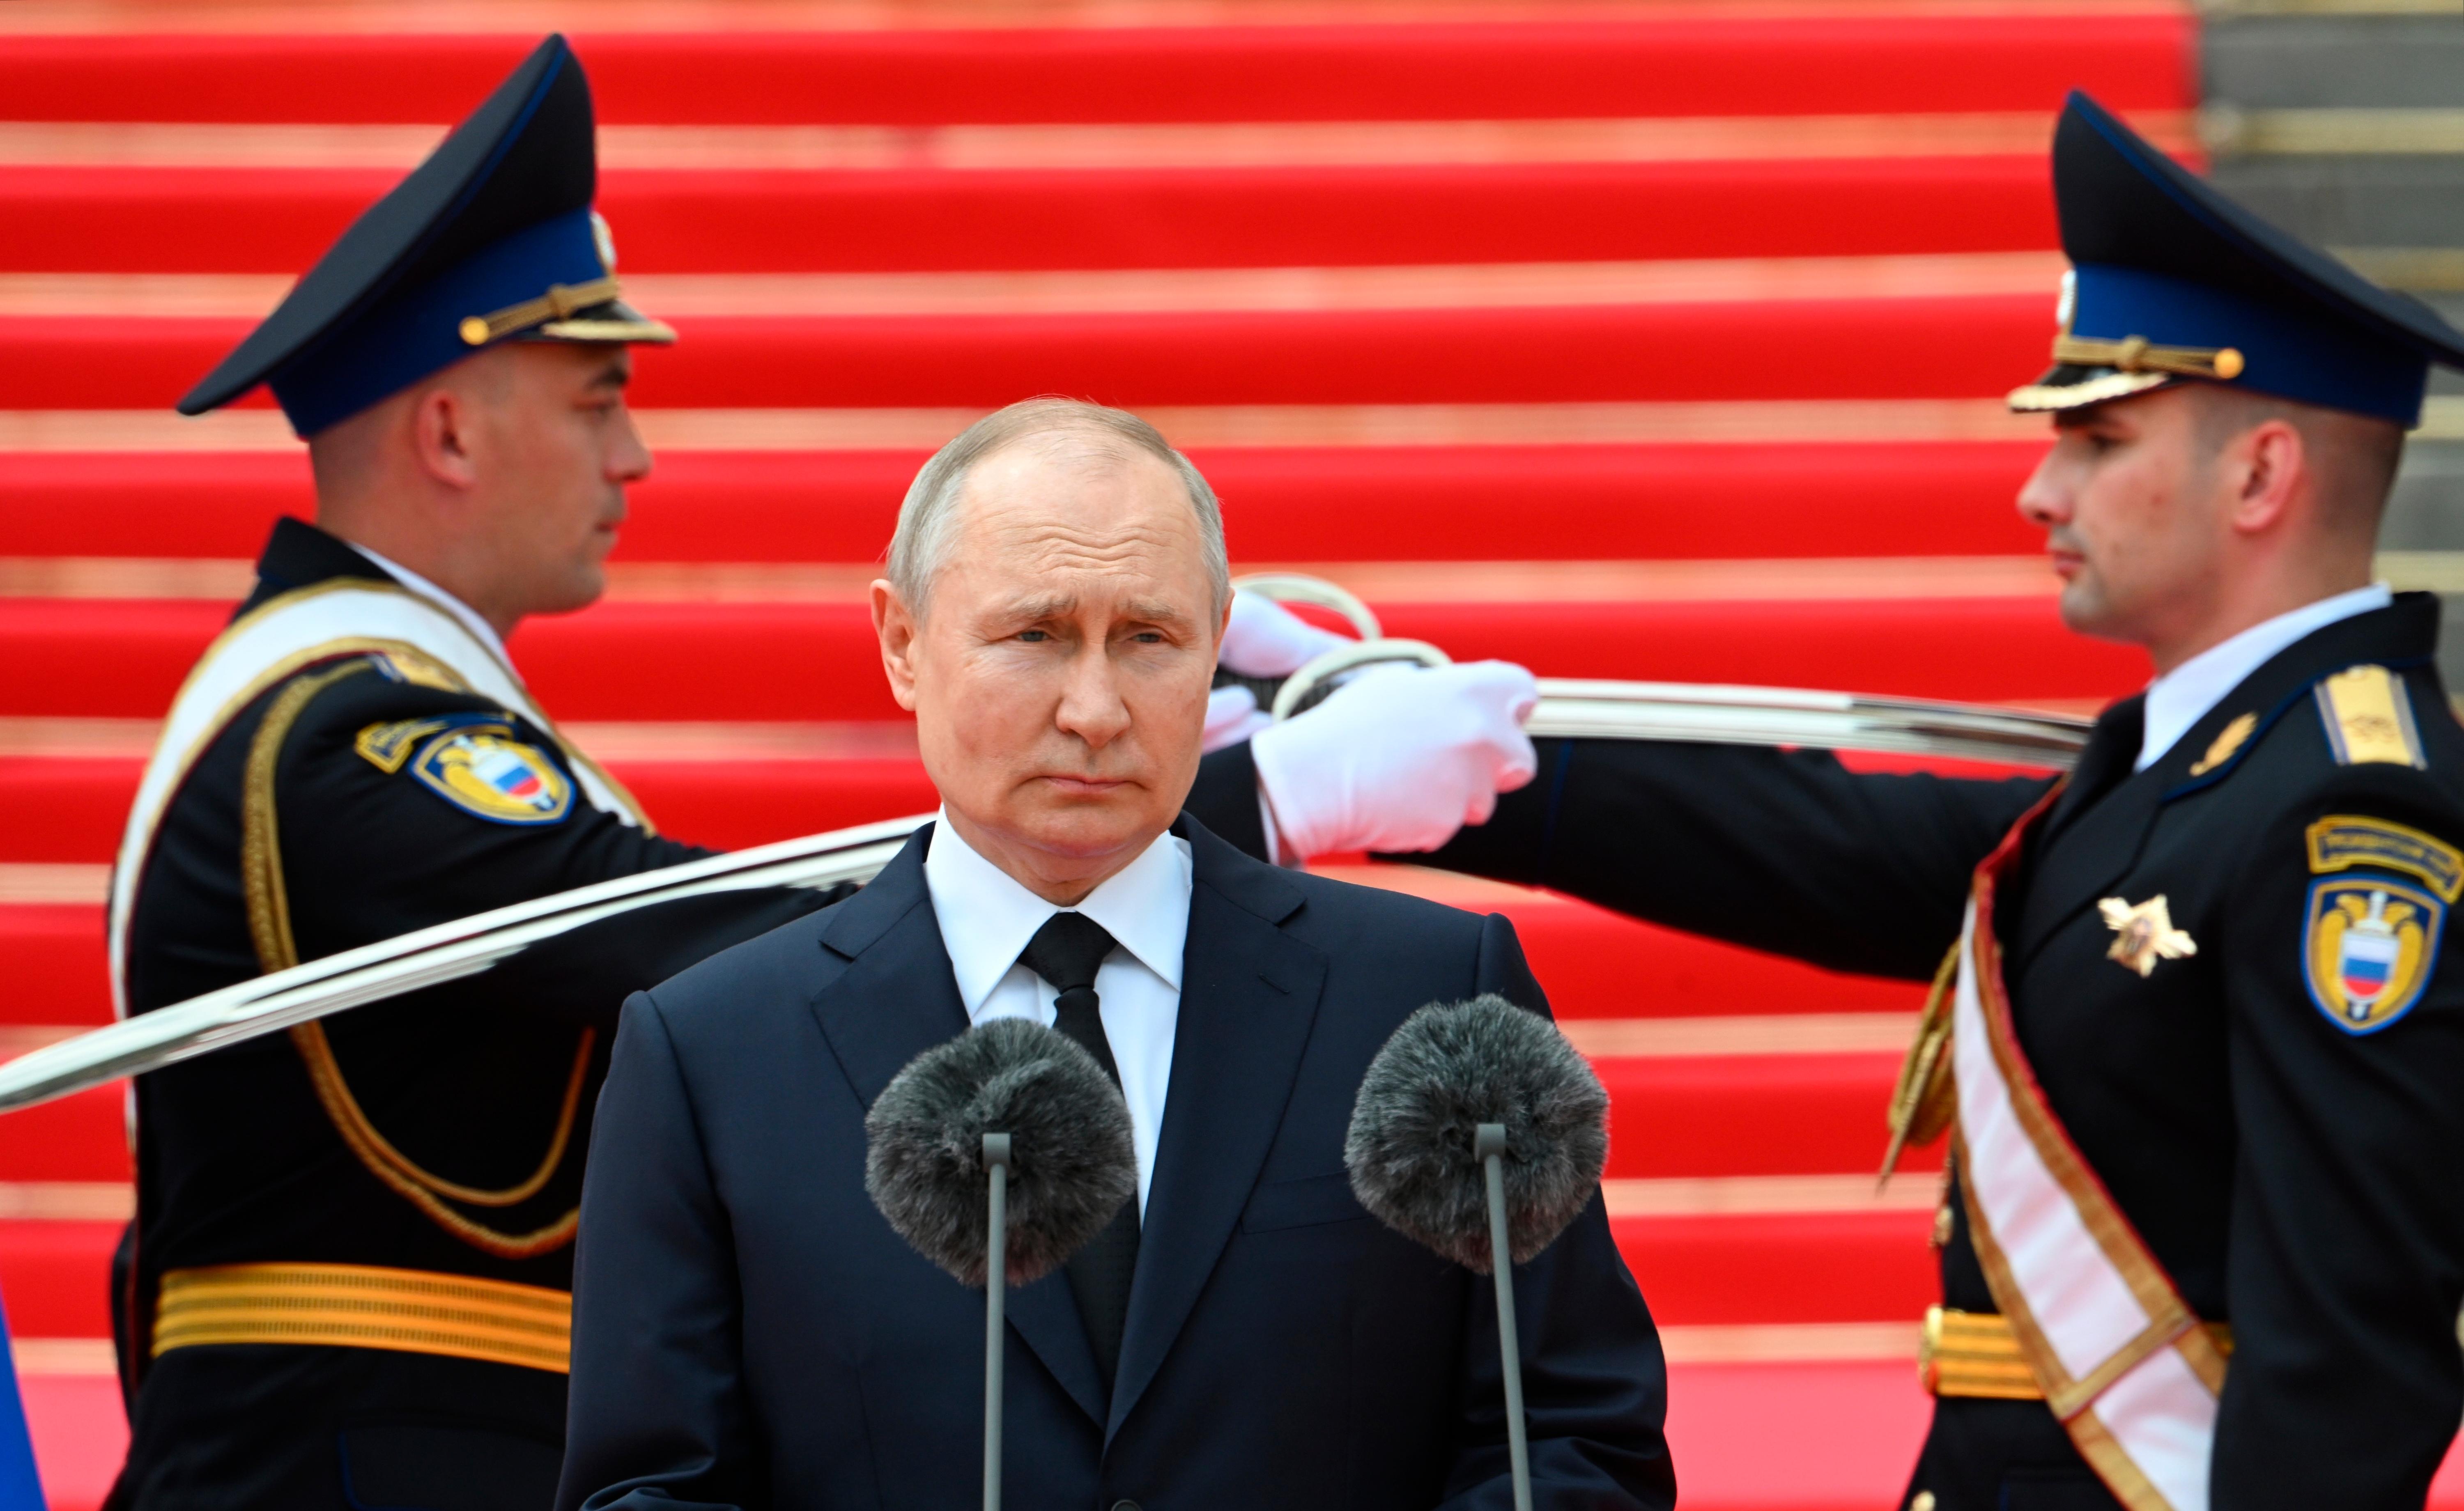 Guerra da Ucrânia: mercenário russo se volta contra exército de Putin